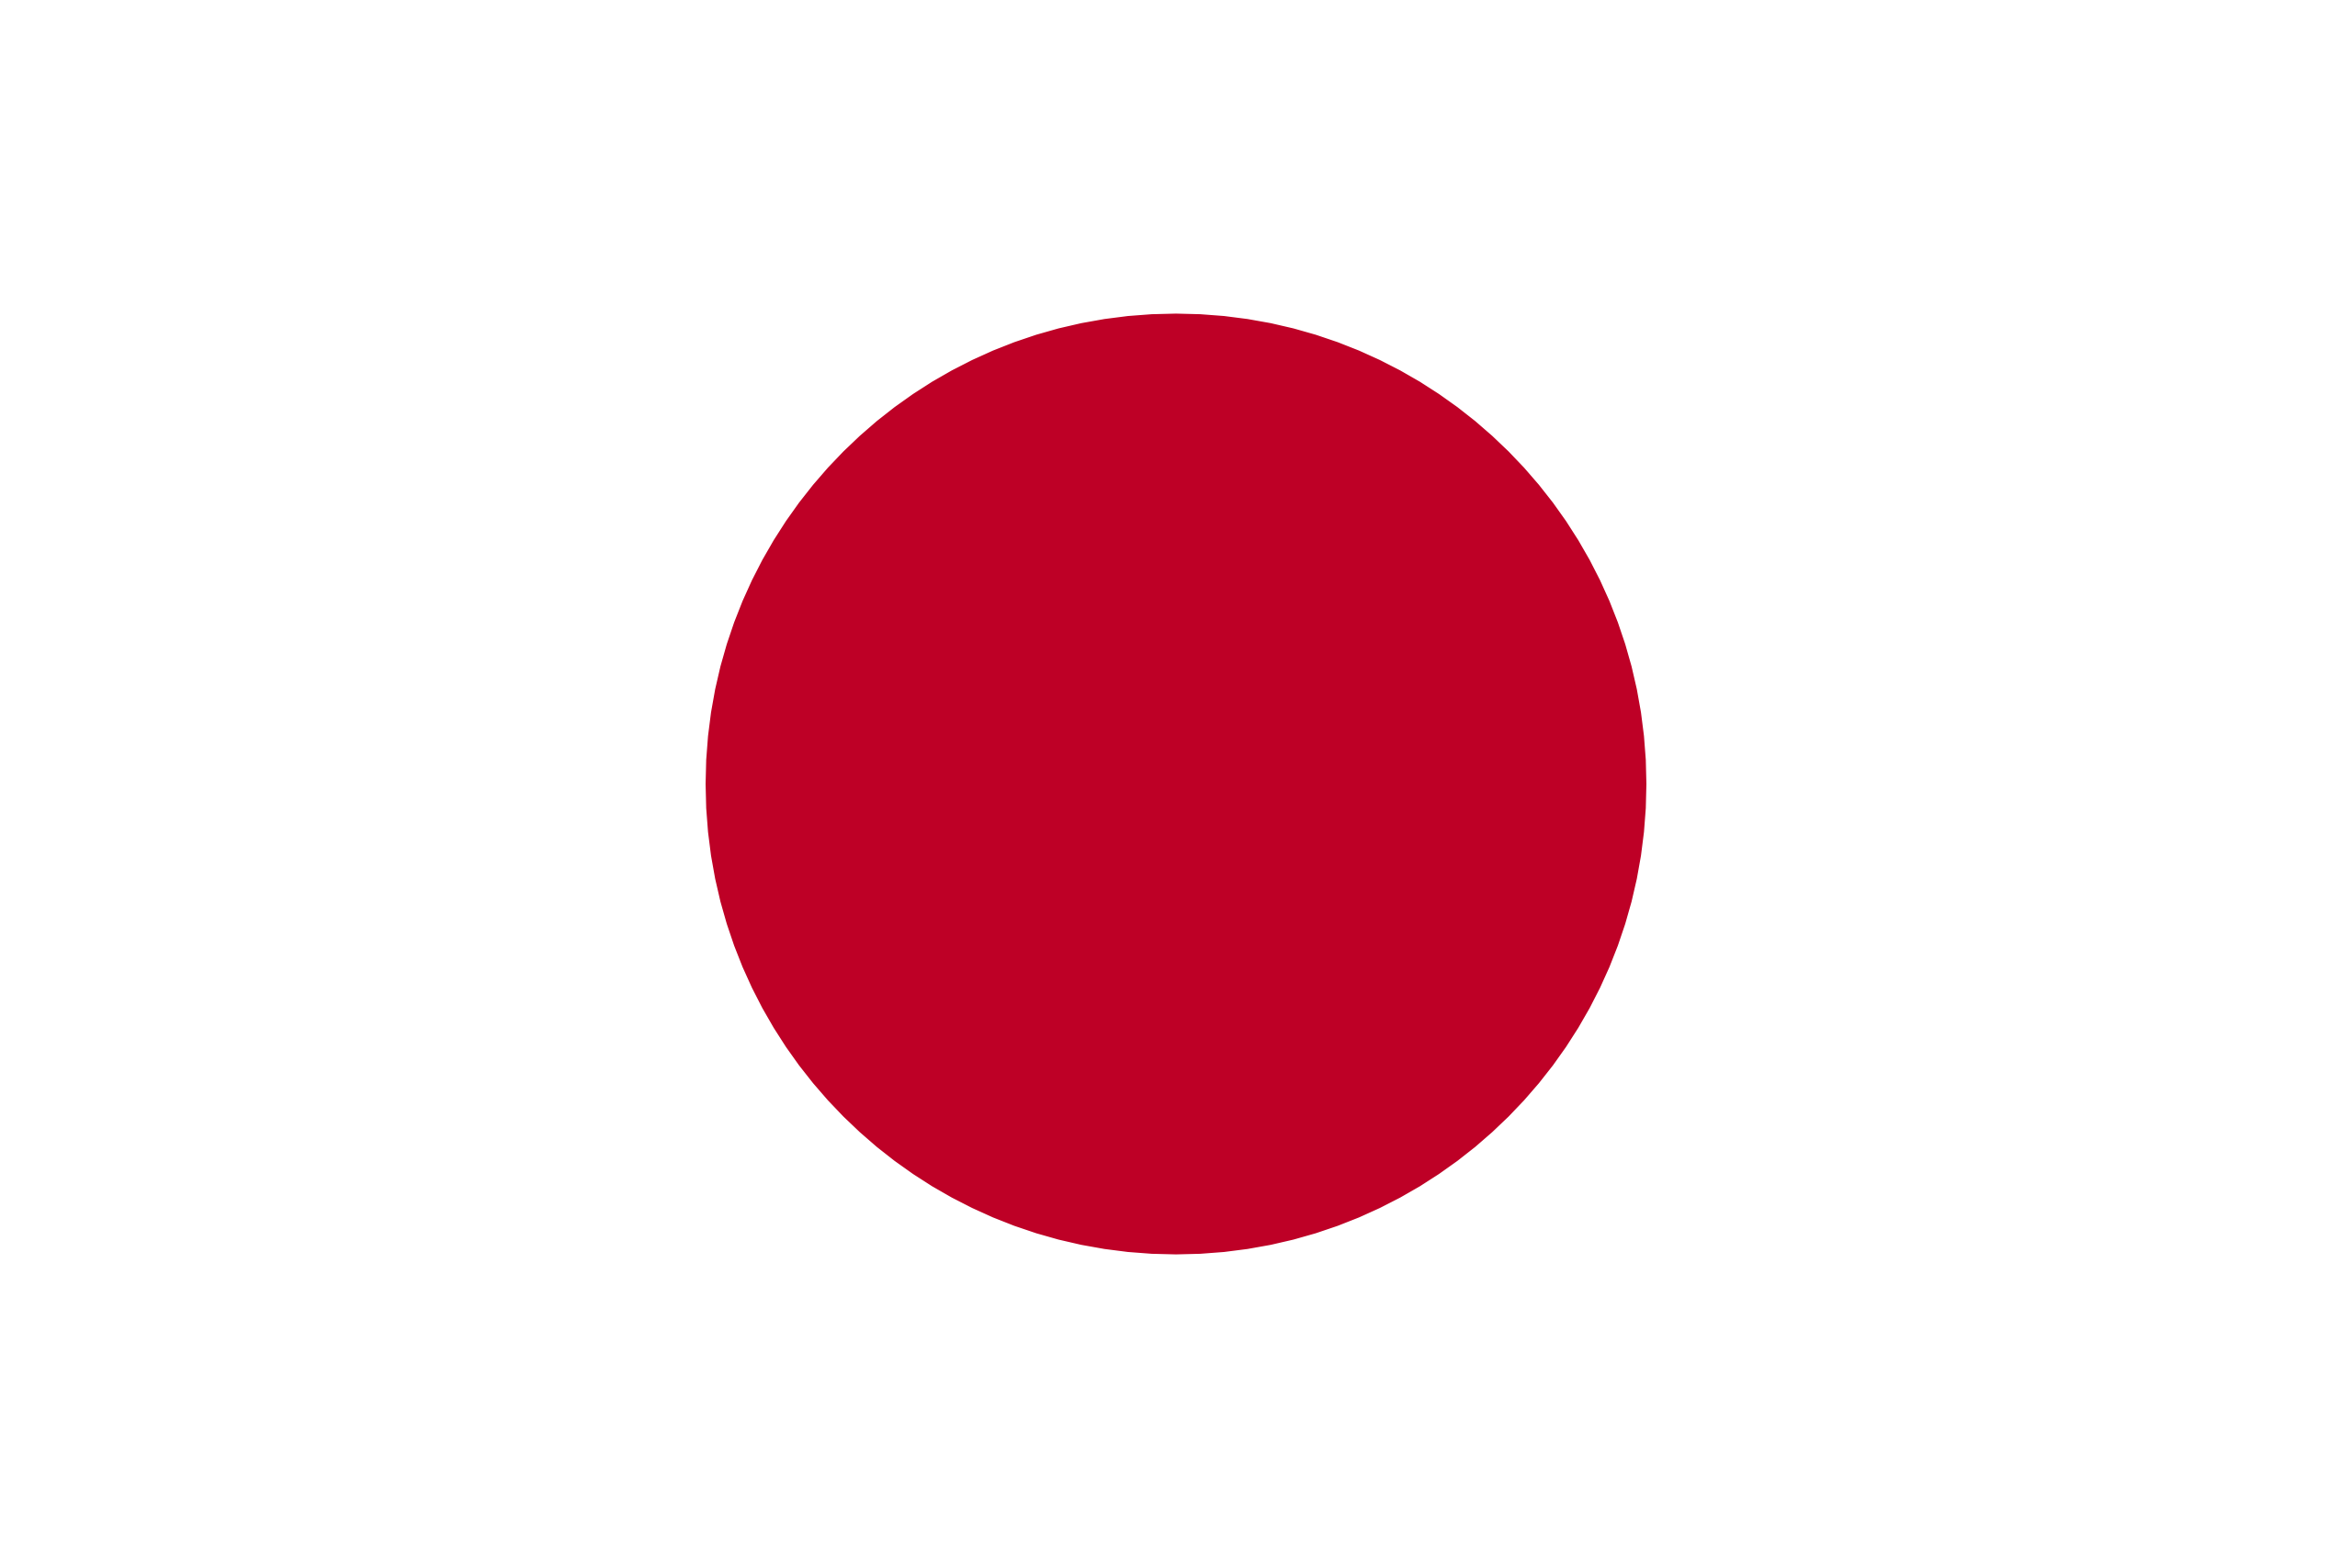 fkag of Japan